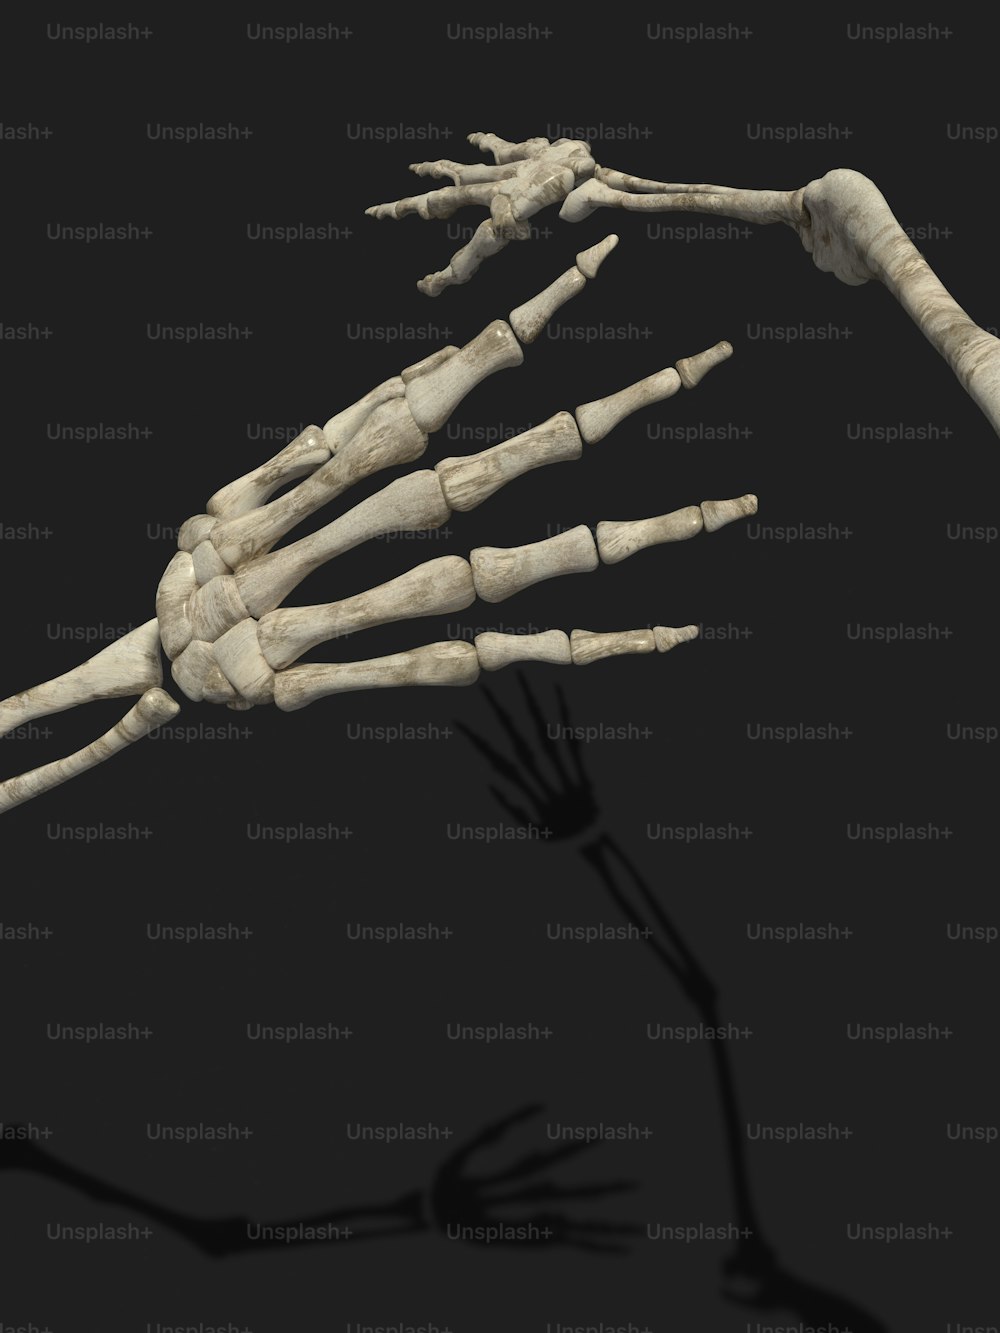 O esqueleto de uma pessoa é mostrado nesta imagem